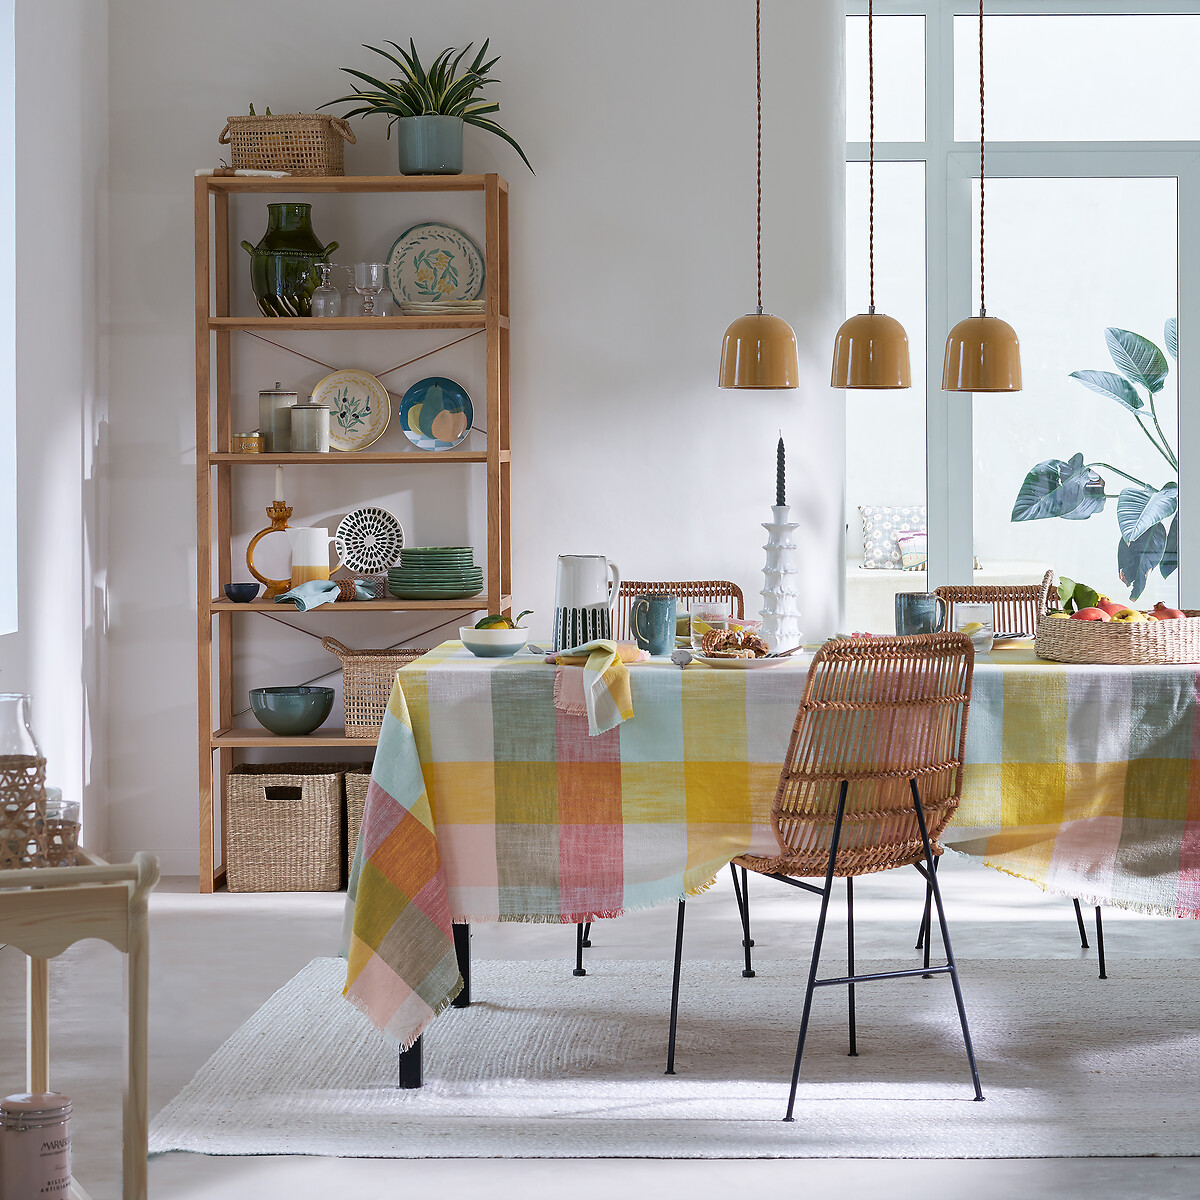 Комплект из четырех столовых полотенец Formia 45 x 45 см разноцветный LaRedoute, размер 45 x 45 см - фото 3